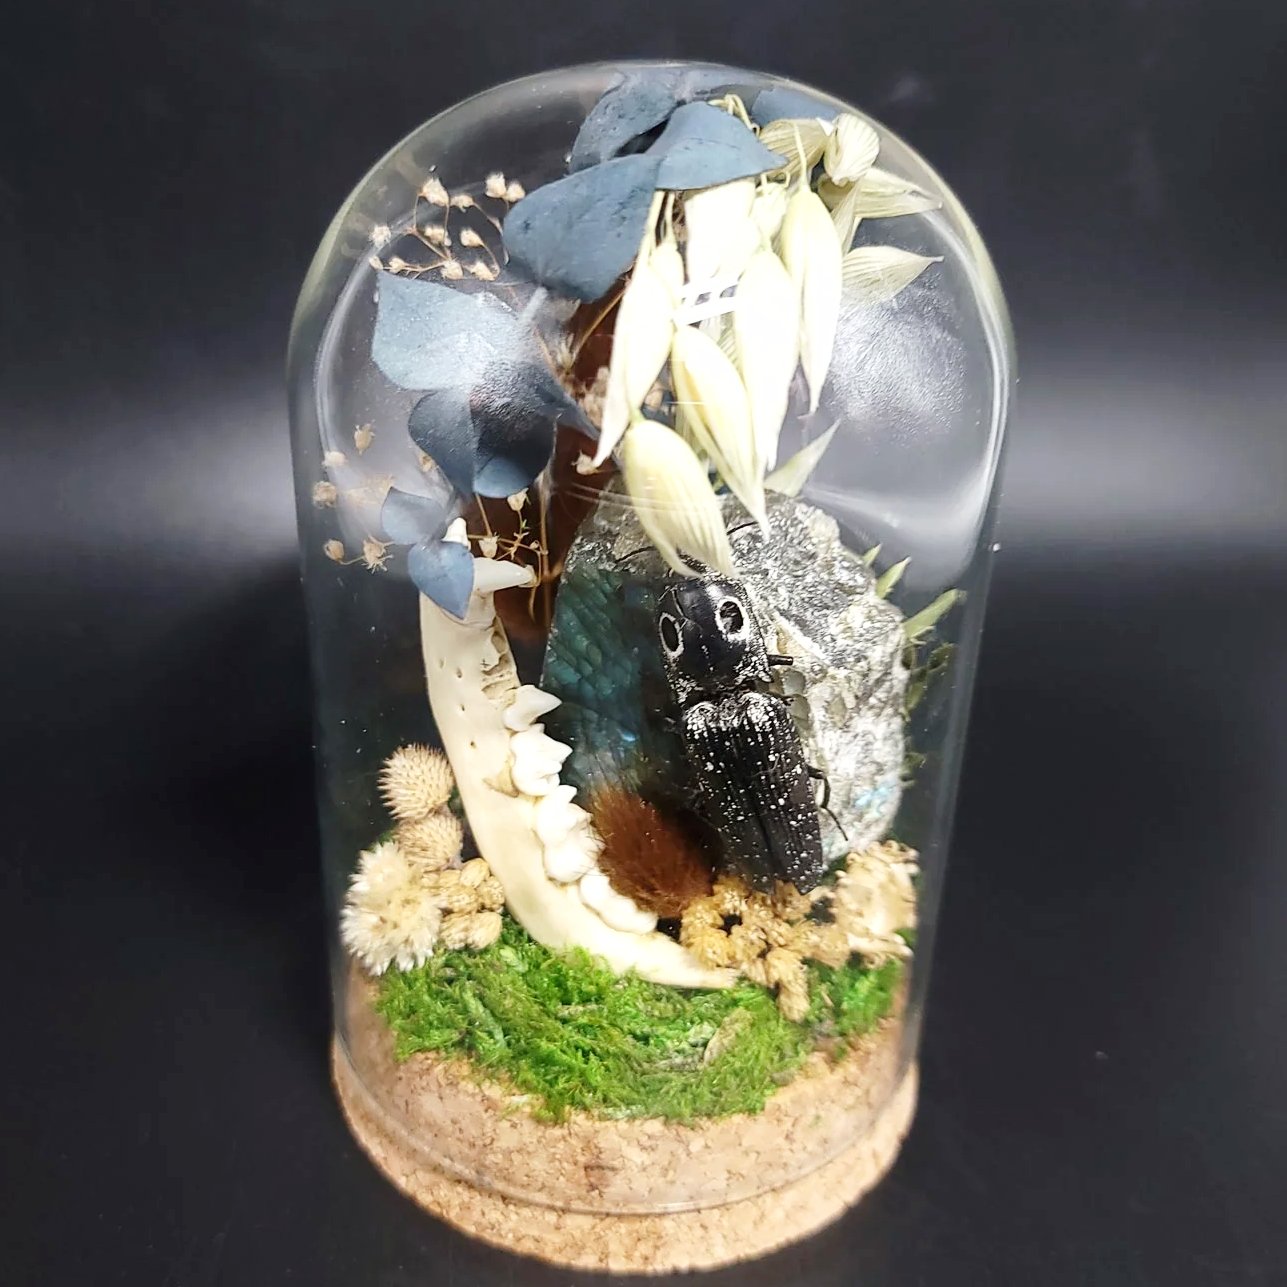 Labradorite, Jackknife Beetle, and Raccoon Mandible Curio Capsule Oddities Jar - Elevated Metaphysical